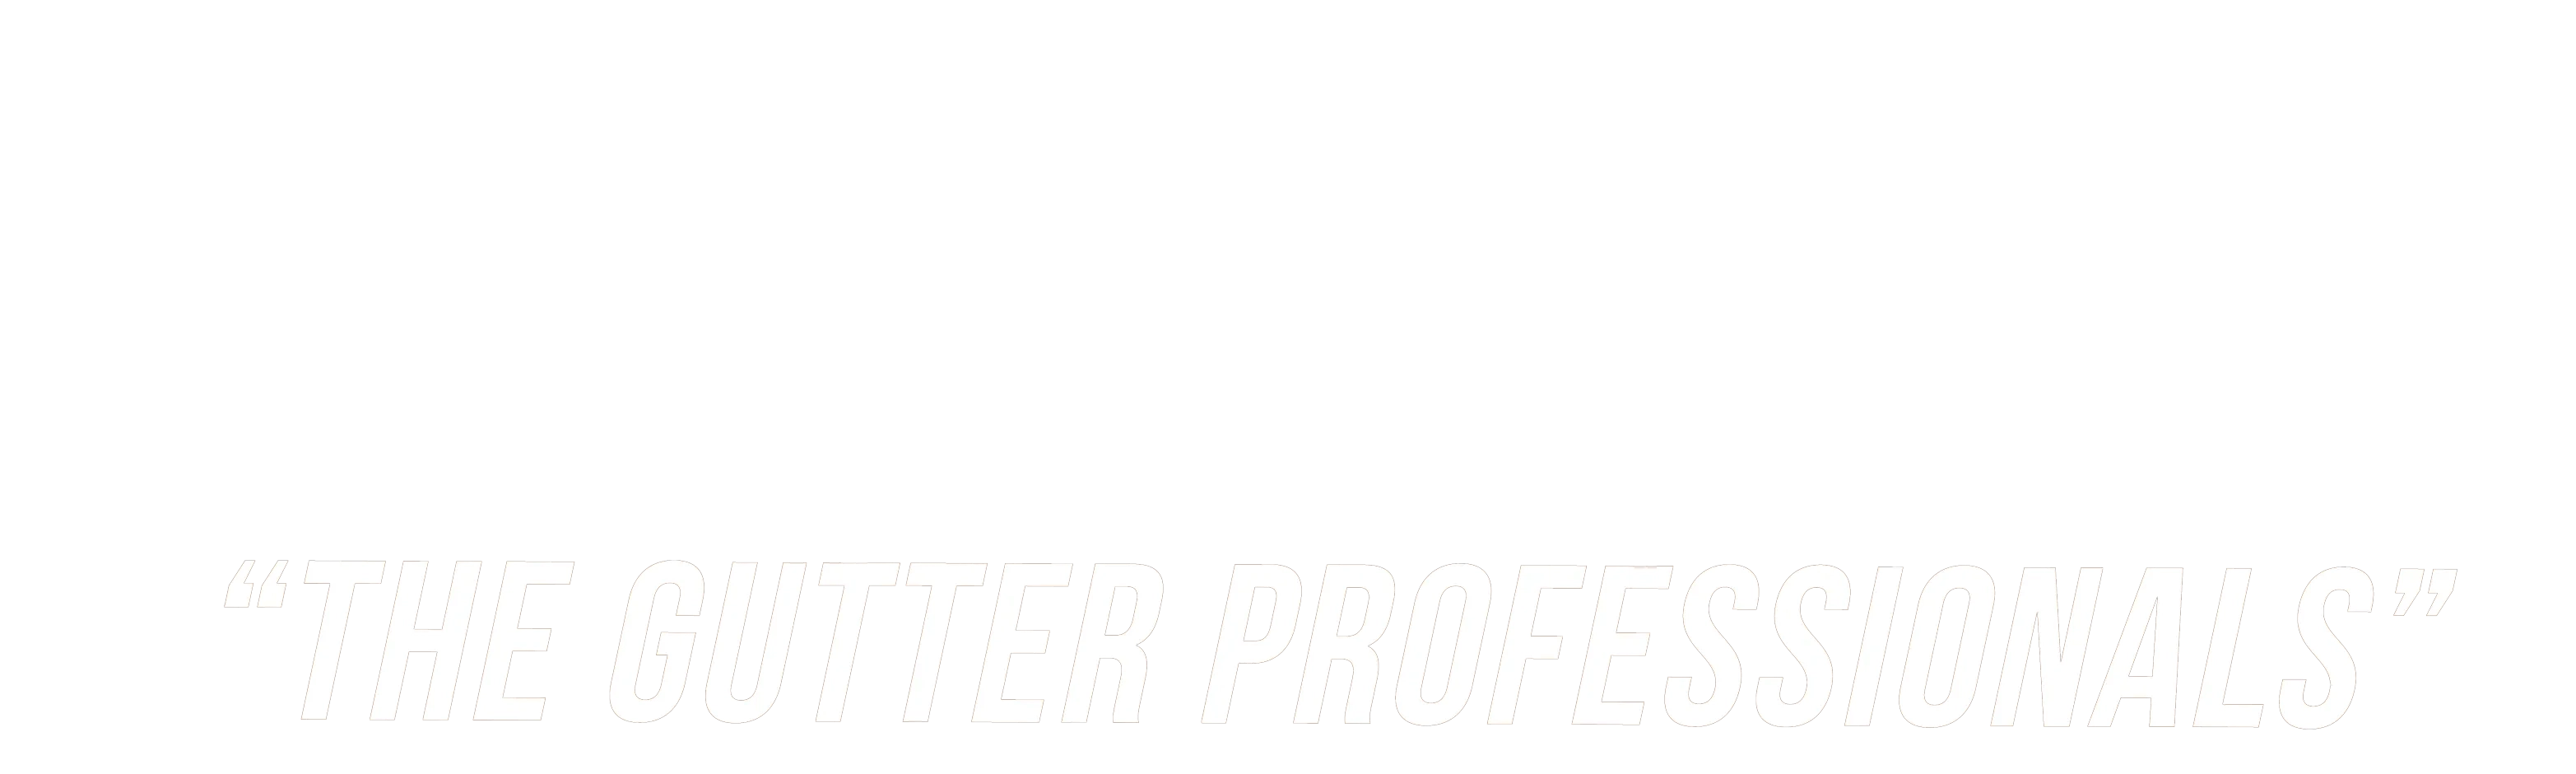 Gary's Gutter Service, Inc. Logo